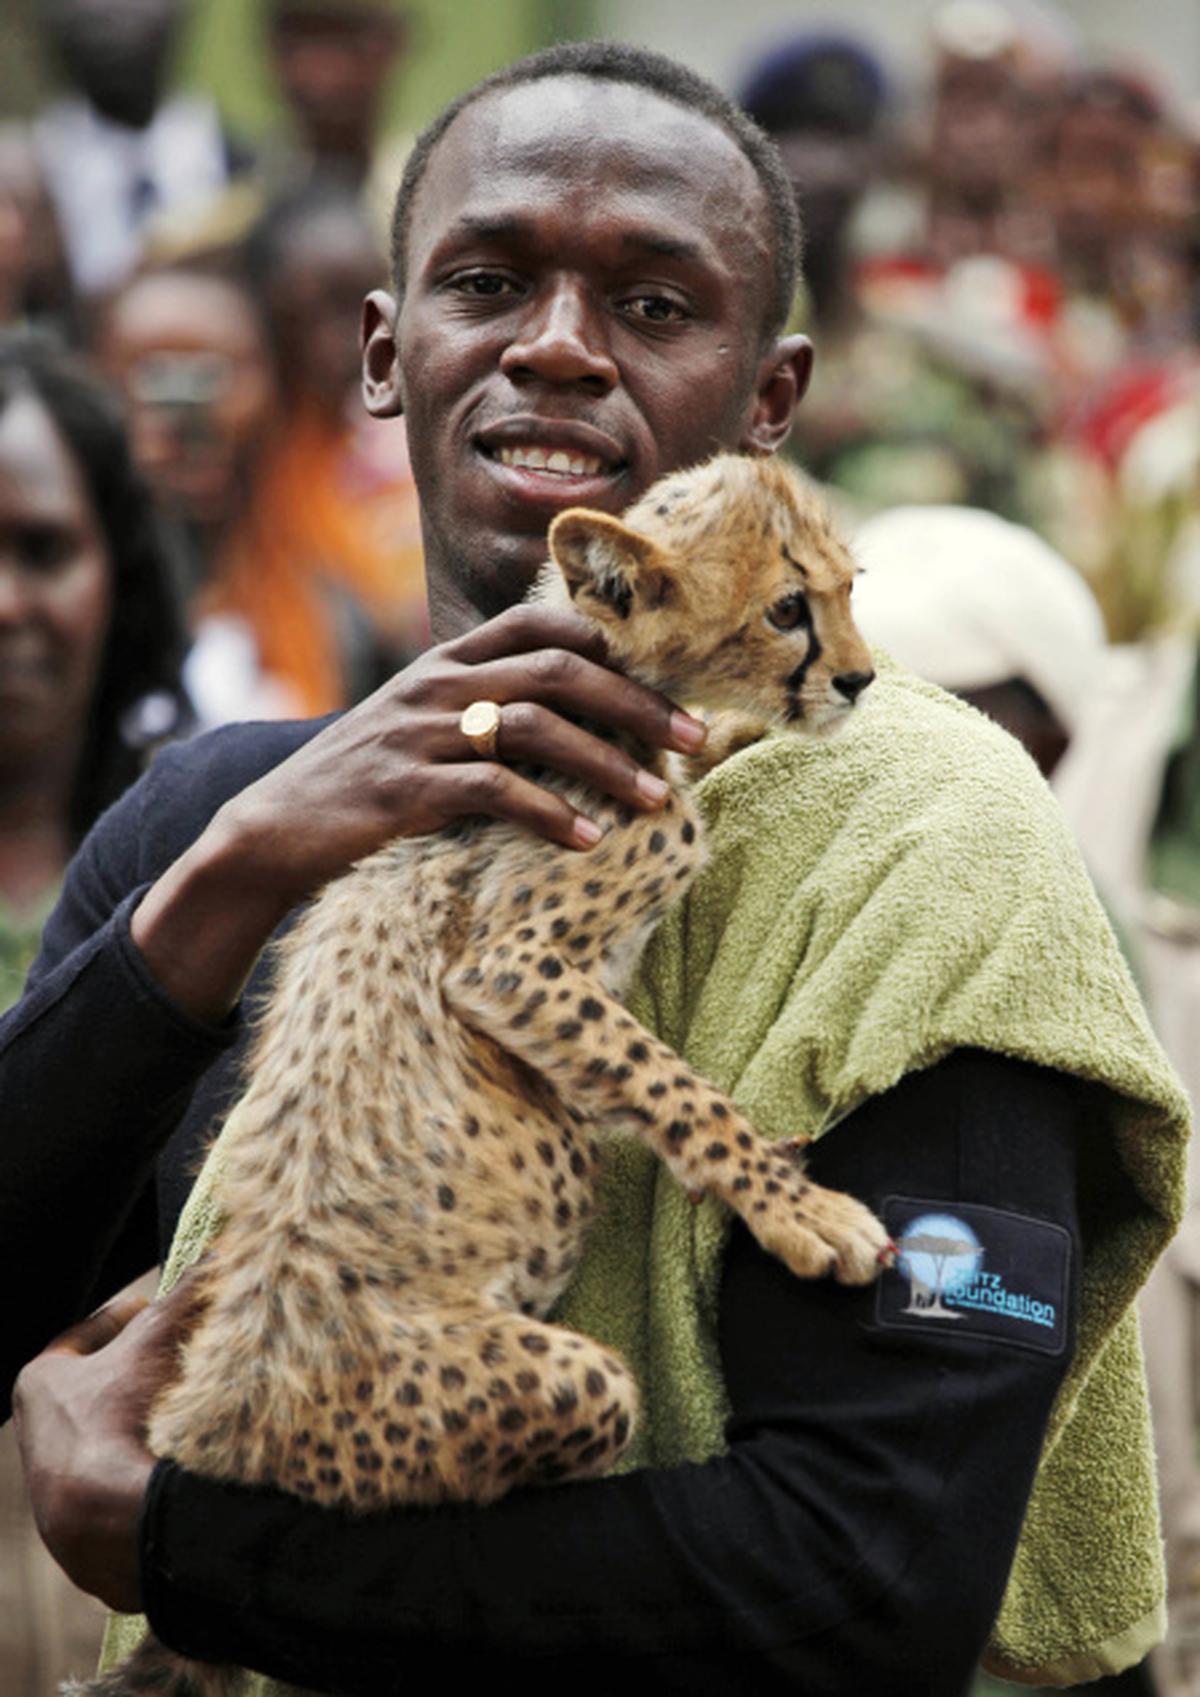 Usain Bolt adopts cheetah - The Hindu